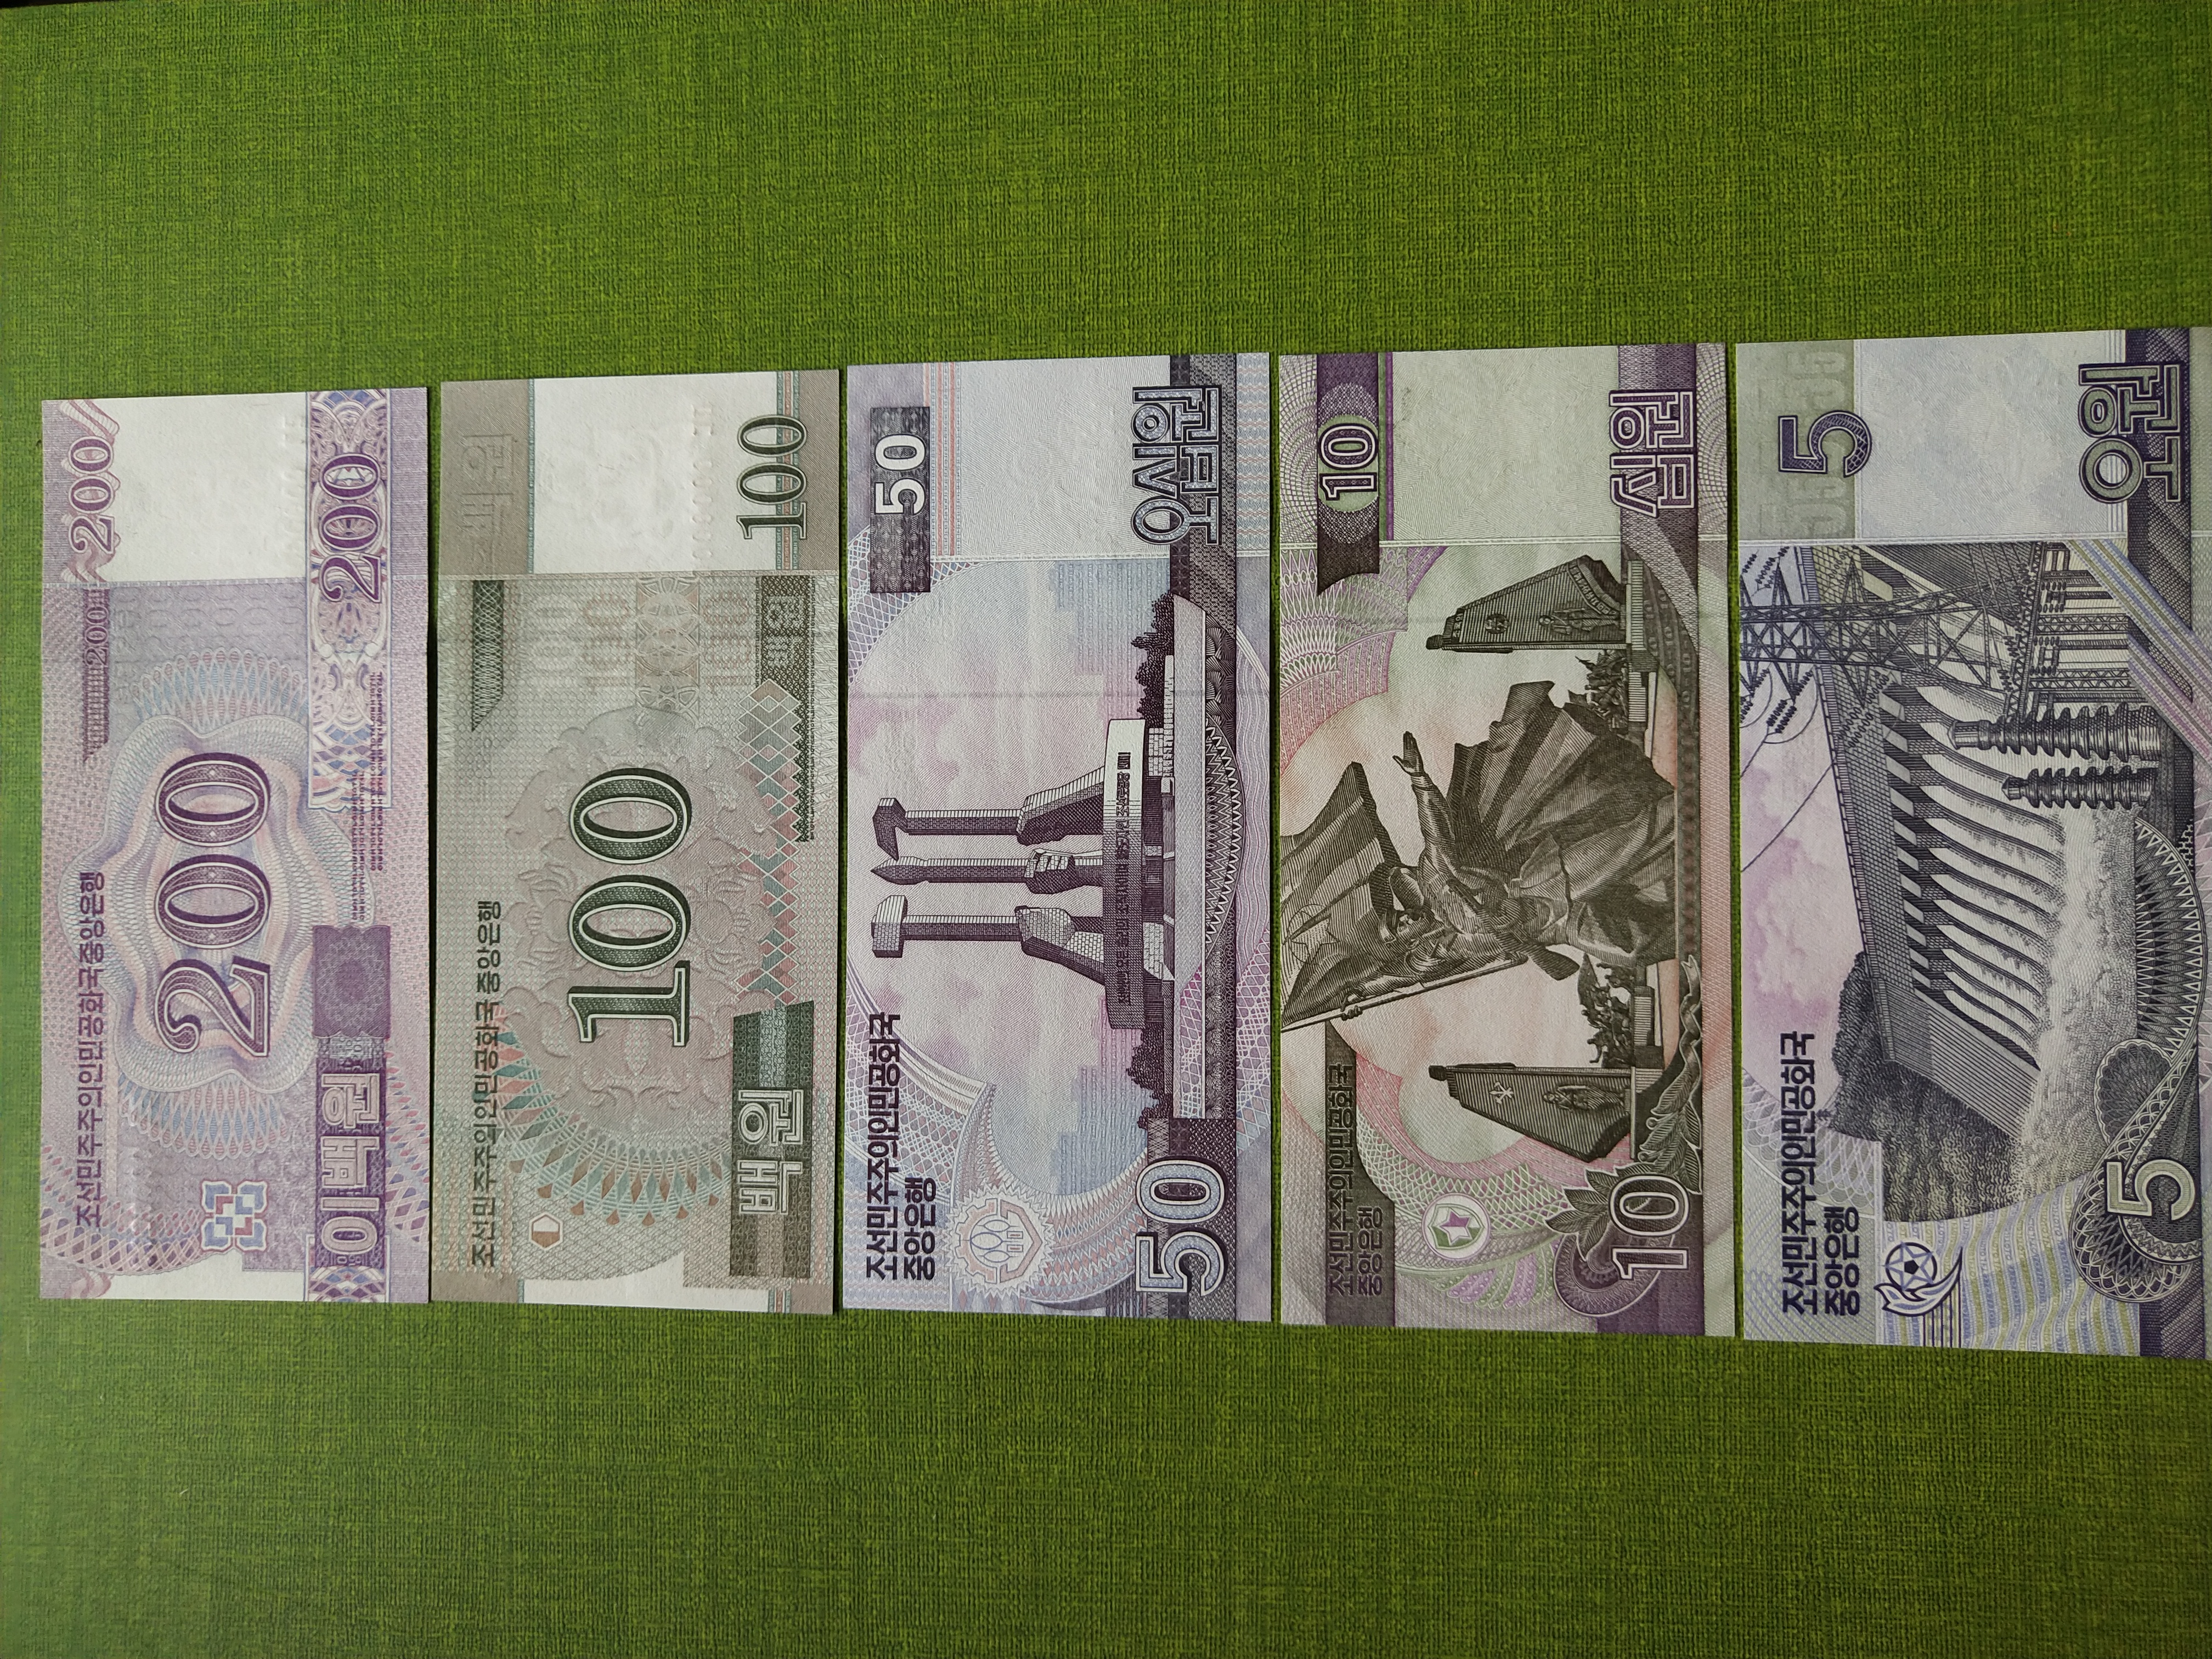 朝鲜印人民币图片